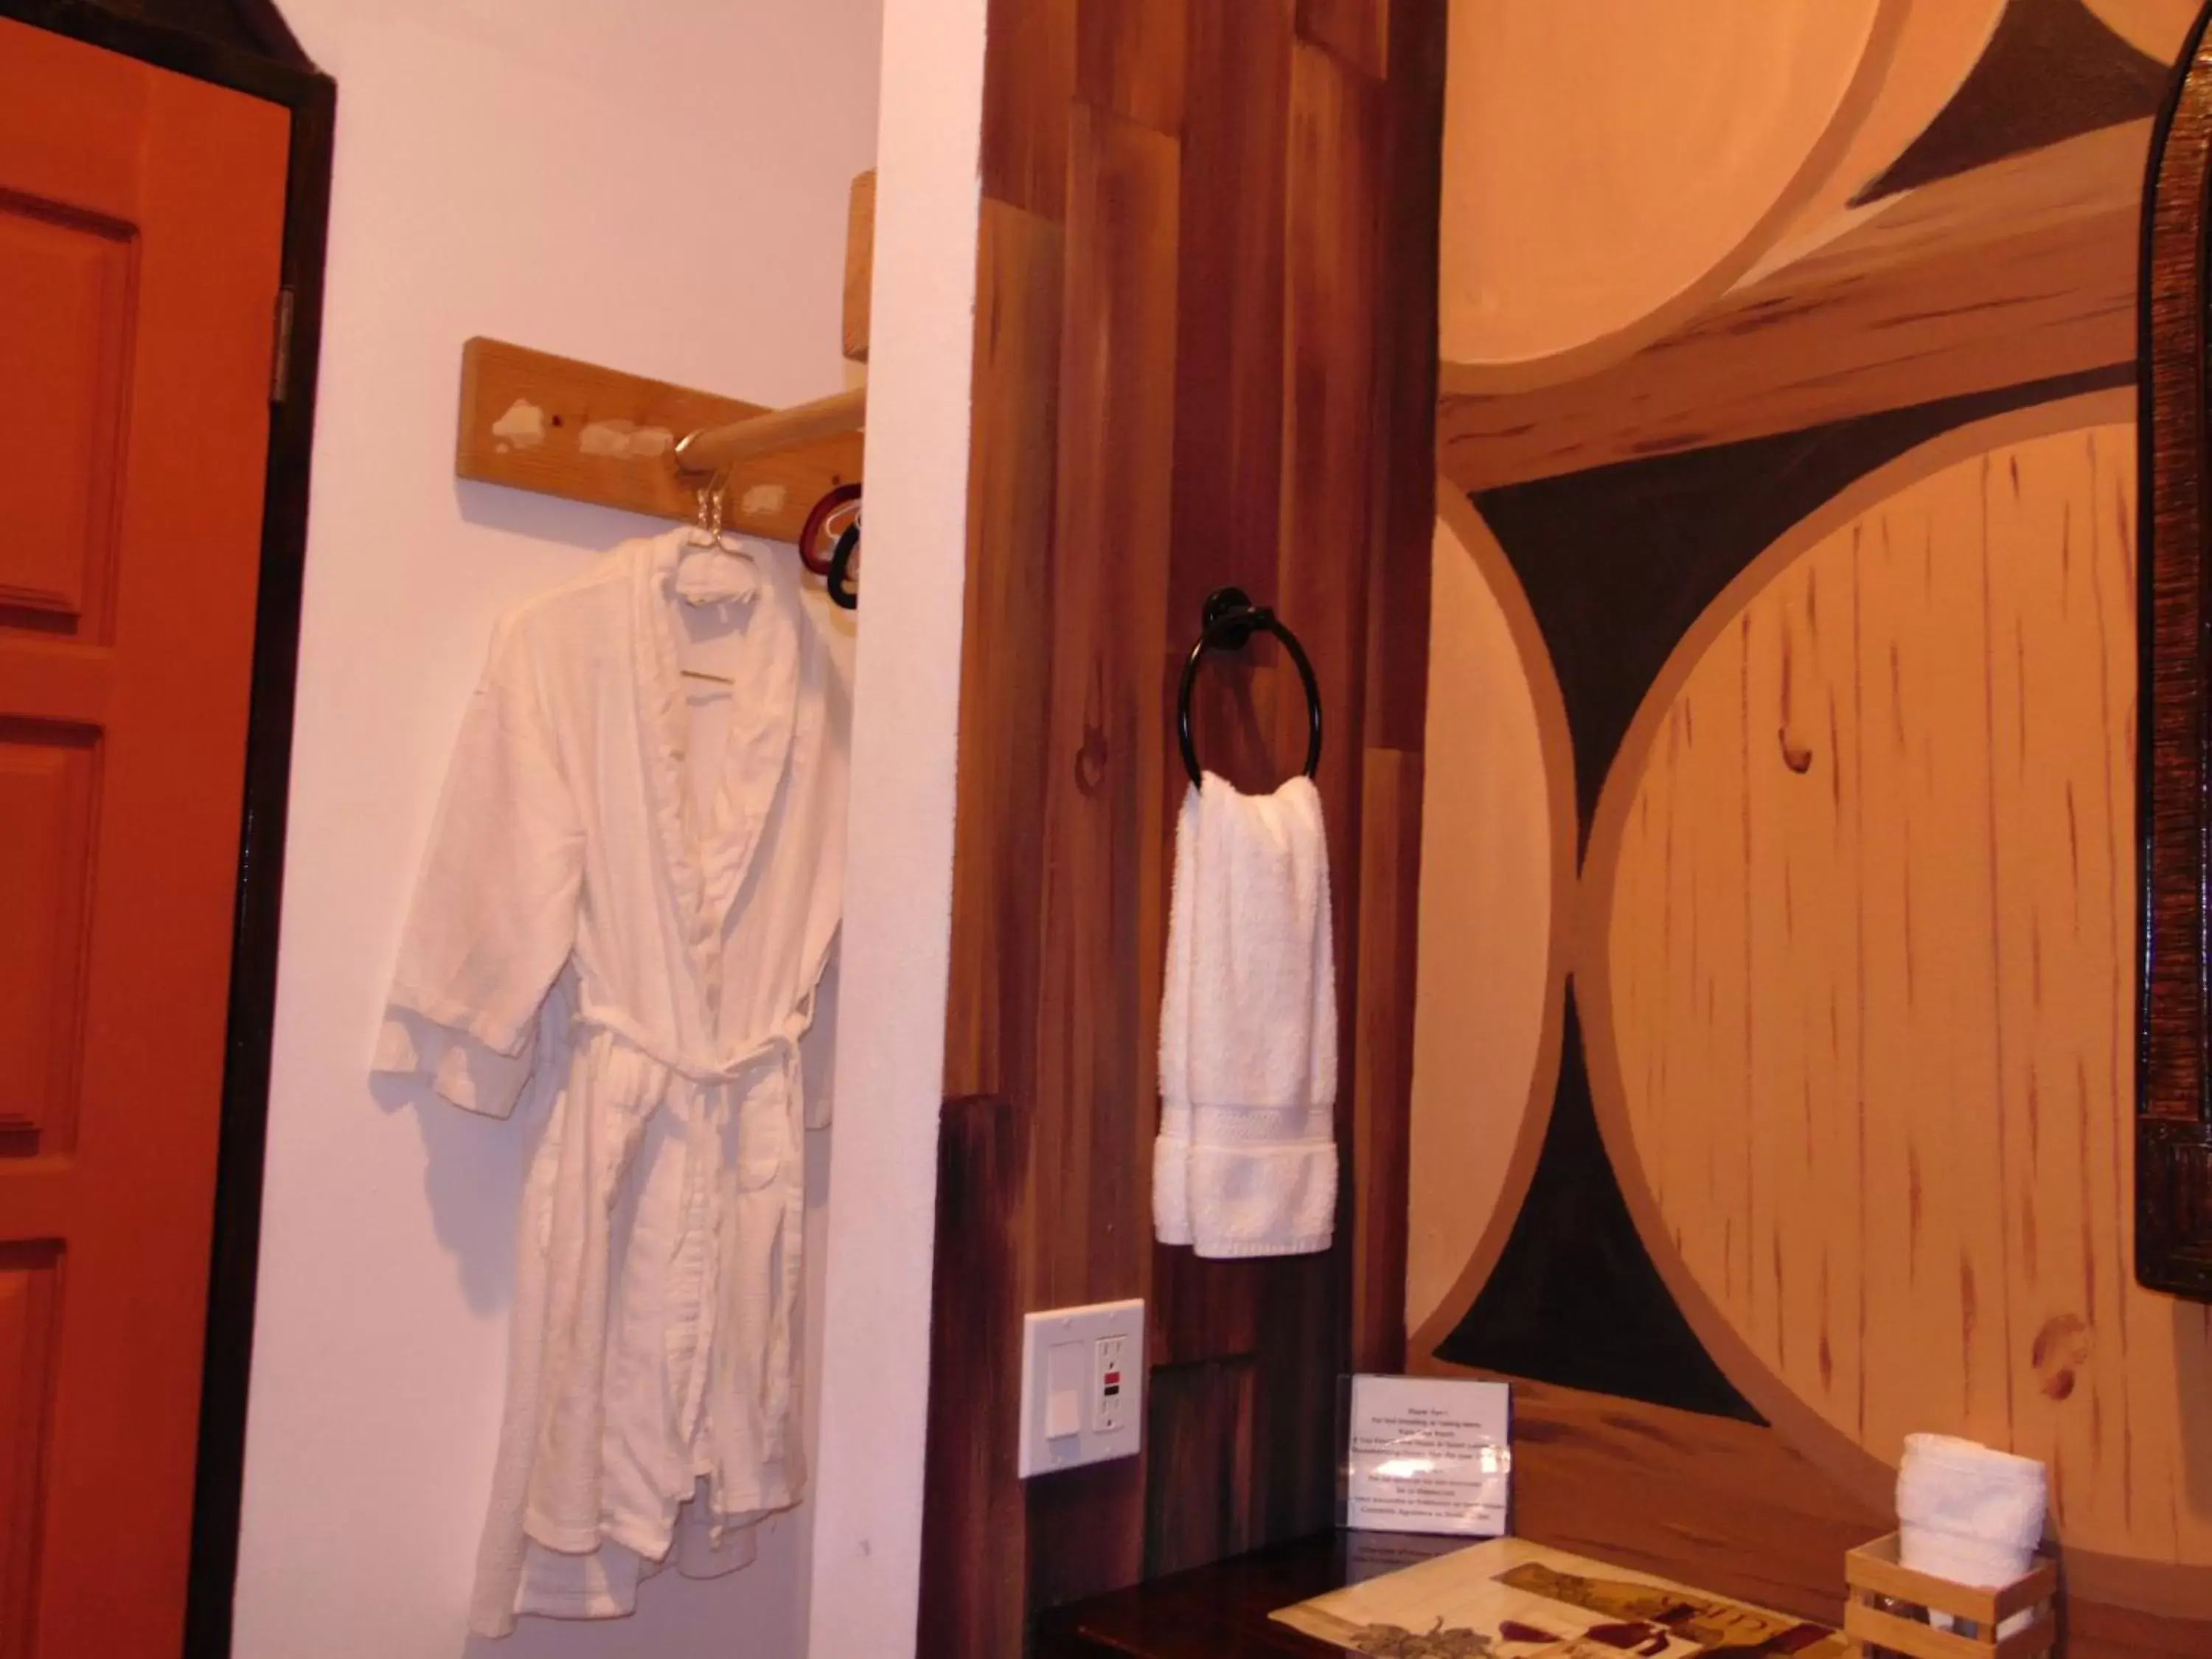 Photo of the whole room, Bathroom in Poco Cielo Hotel